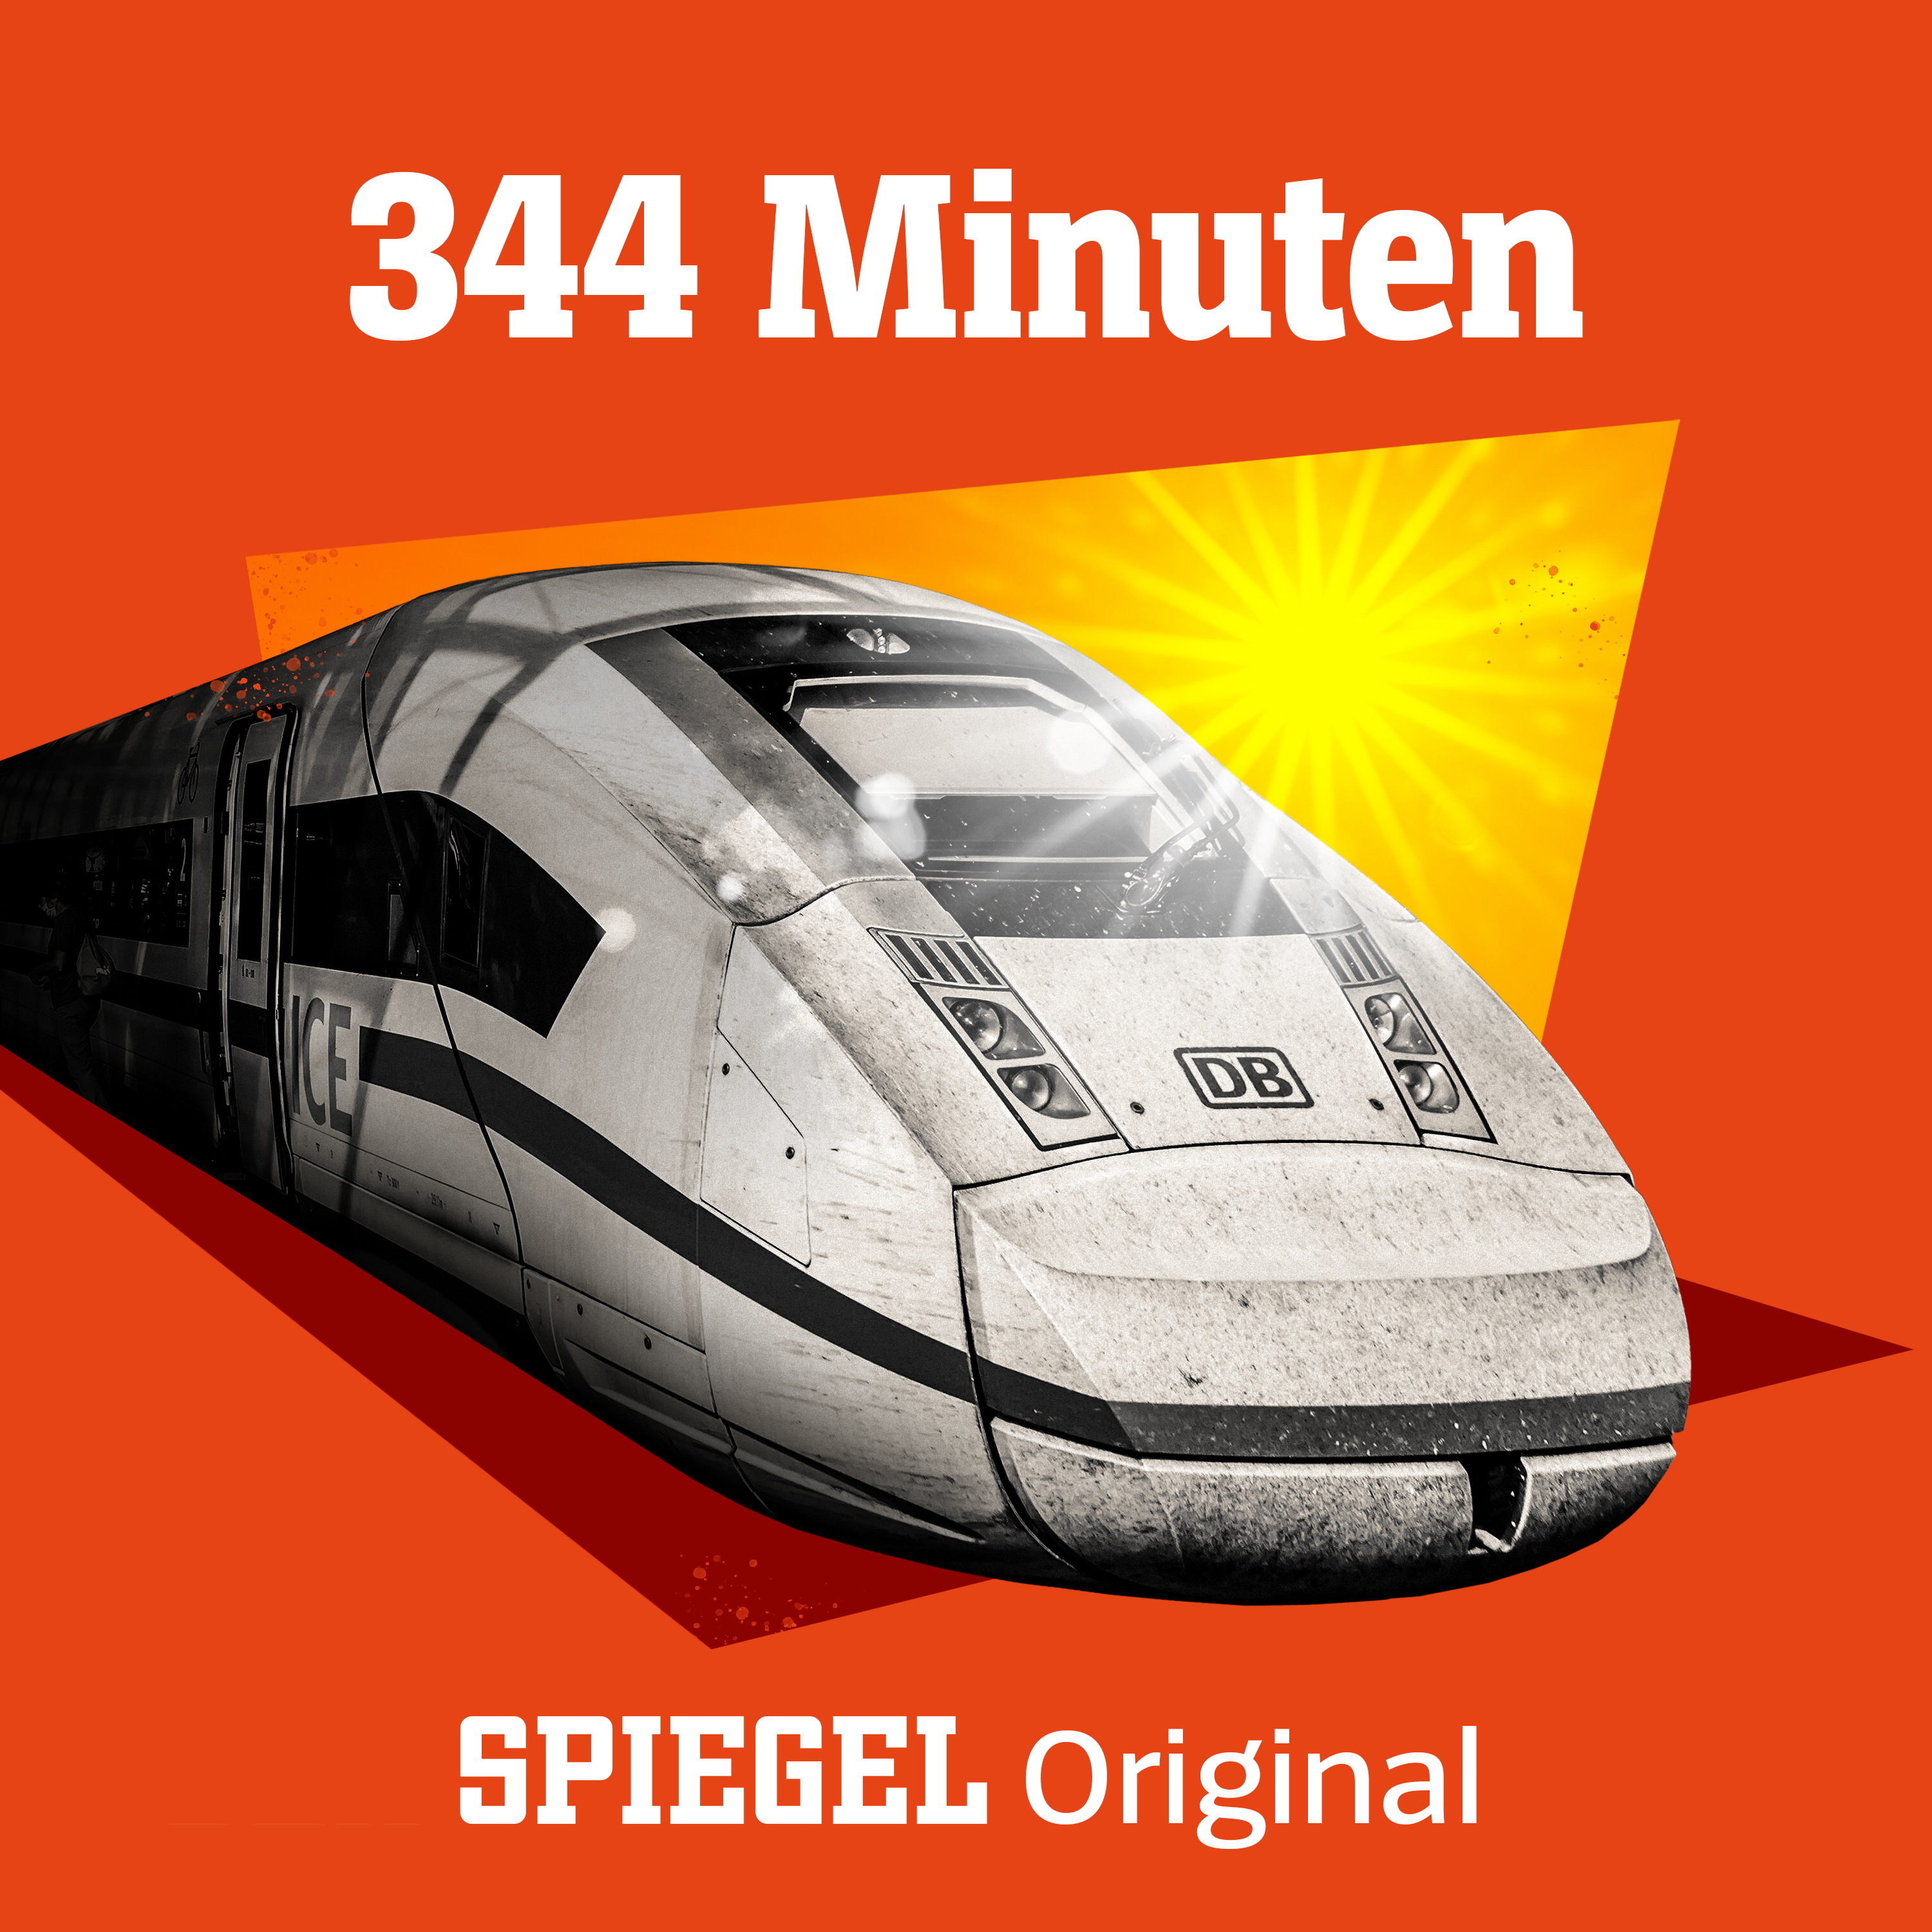 Eure Bahn-Fragen und Zug-Erlebnisse (Bonusfolge, 344 Minuten)